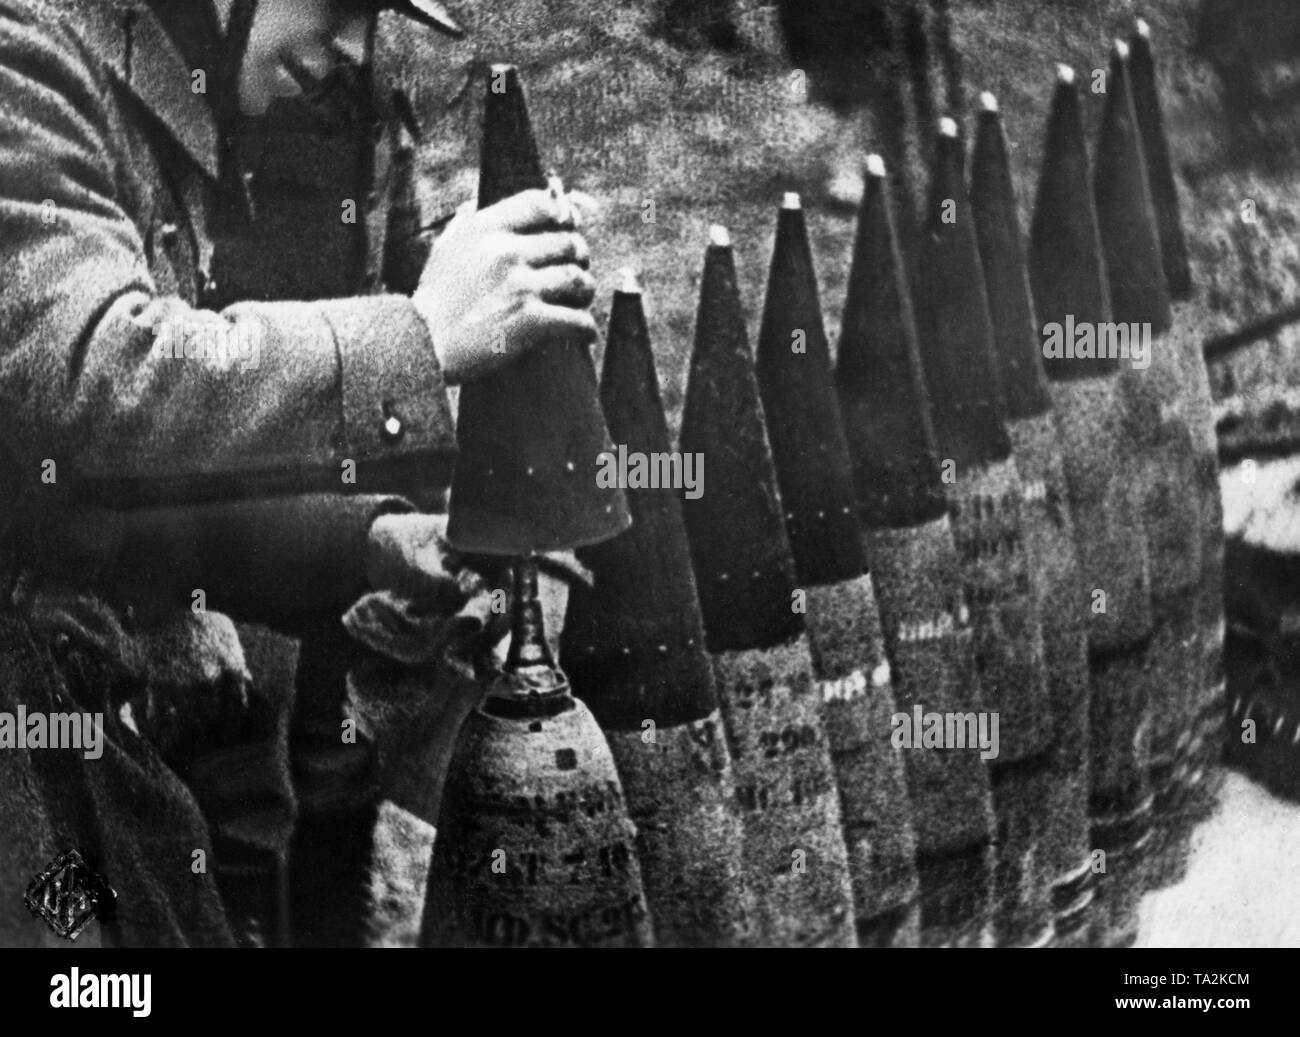 Un tiratore tedesco monta il fuze di granate esplosive. Immagine dal film militare Sieg im Westen (vittoria nella West). Foto Stock